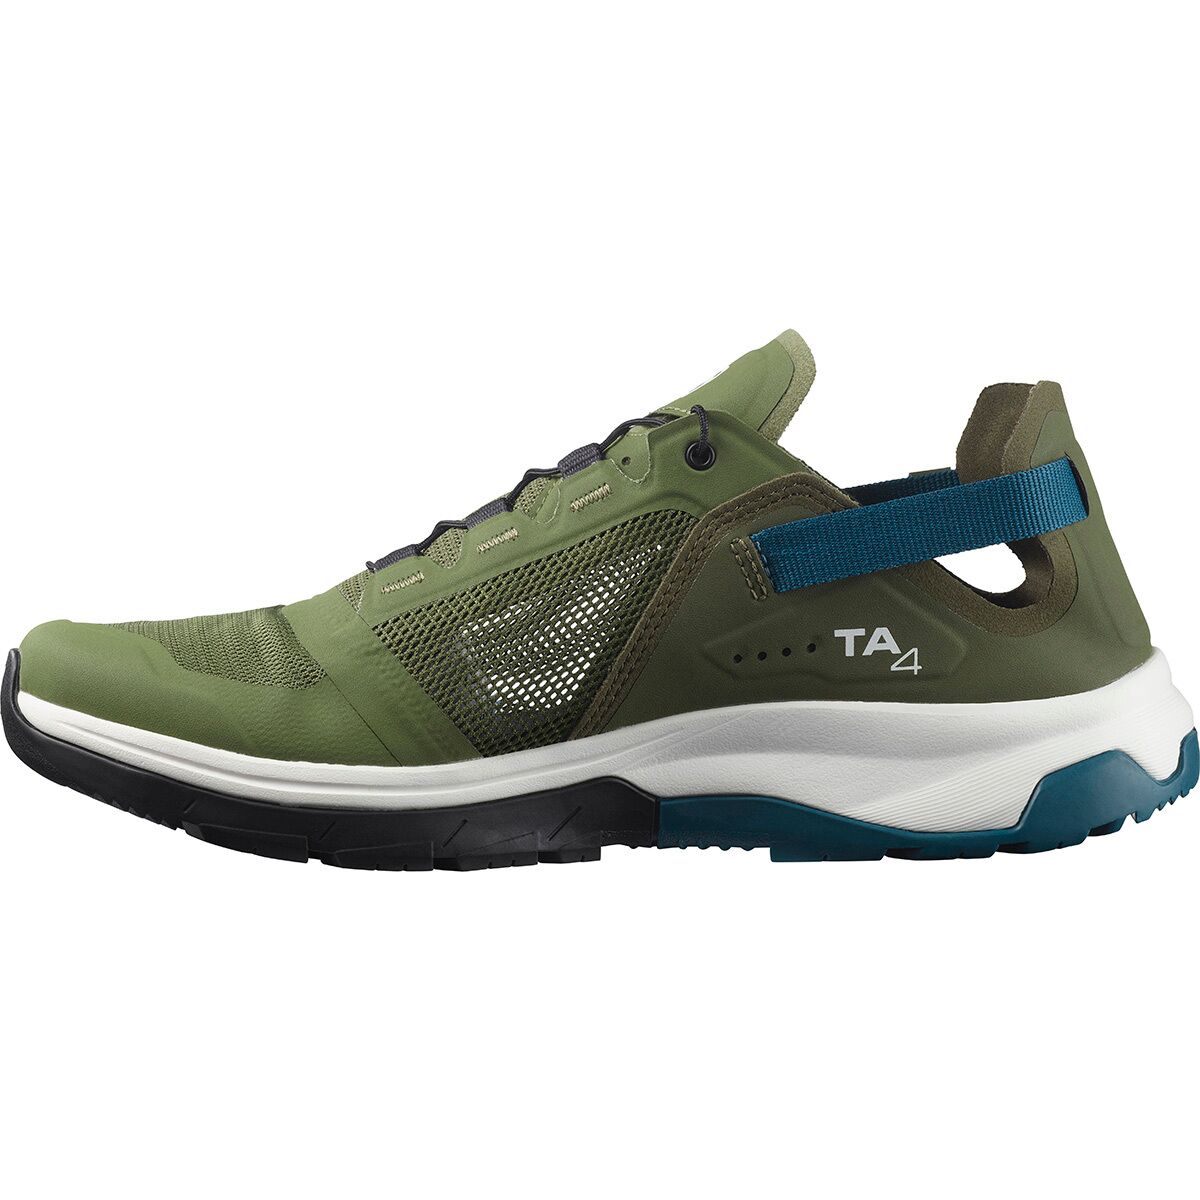 Salomon Tech 4 Water Shoe Men's - Footwear